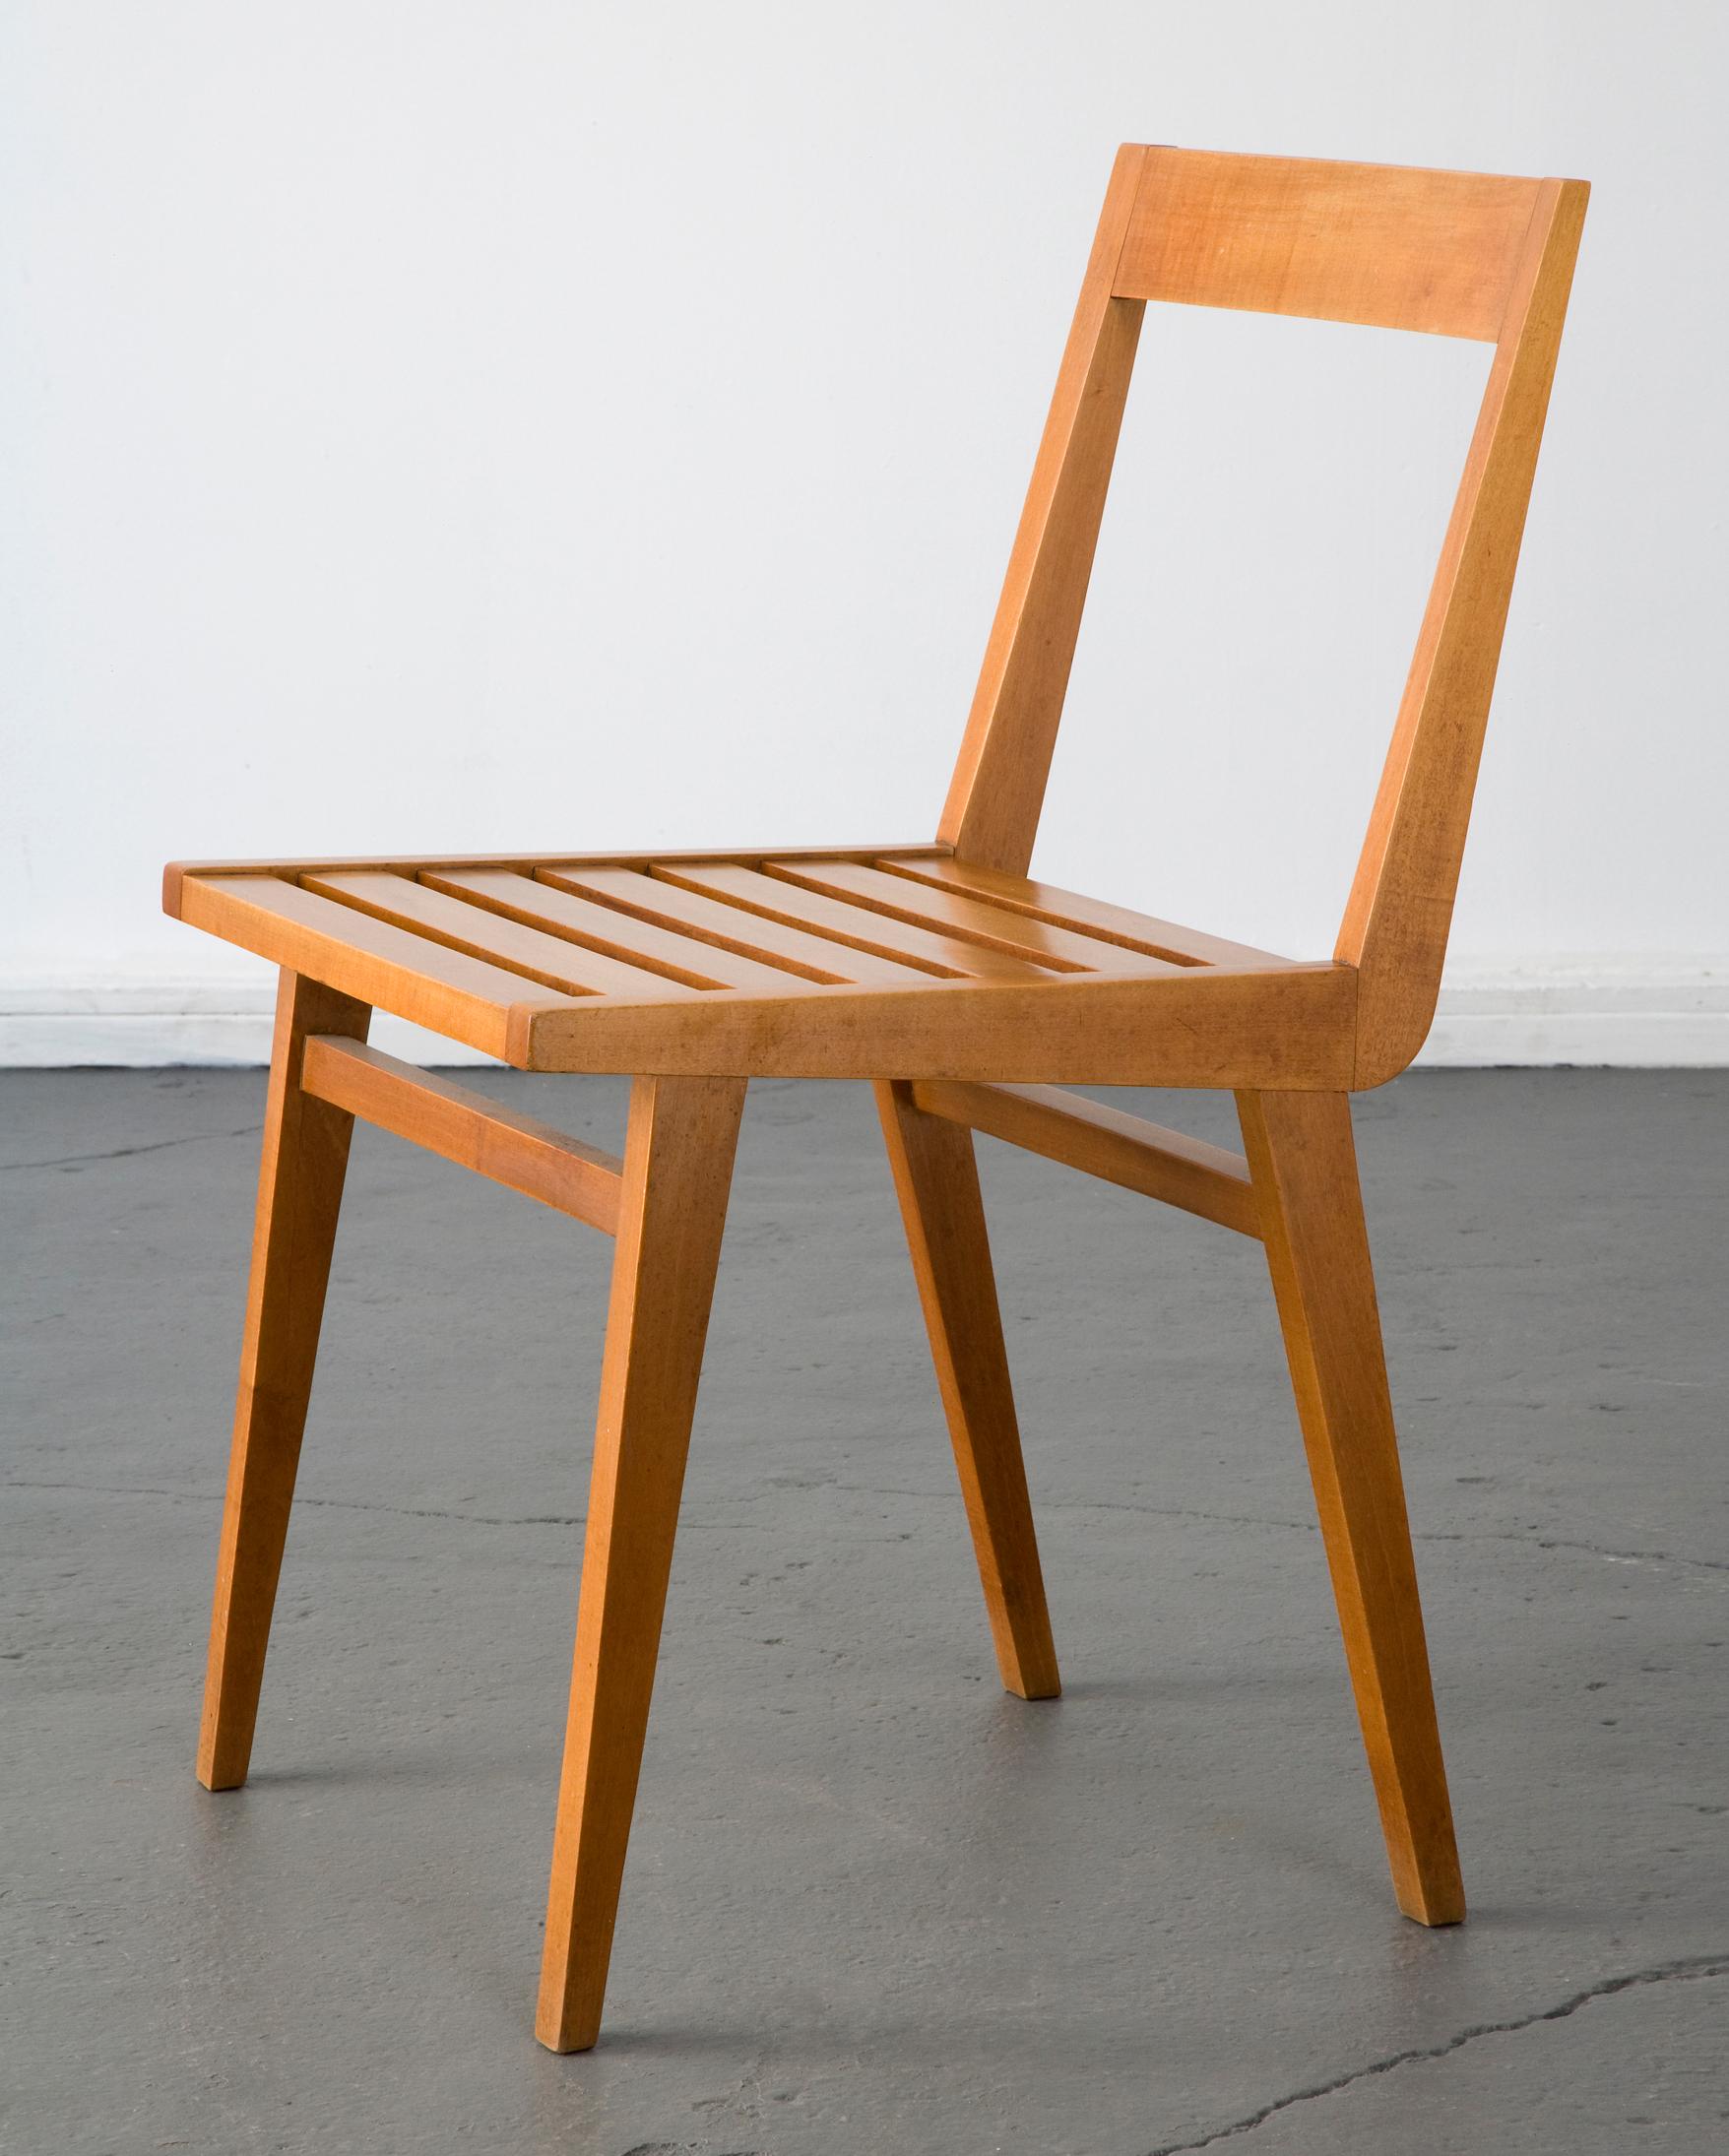 Brazilian Set of 4 chairs by Joaquim Tenreiro